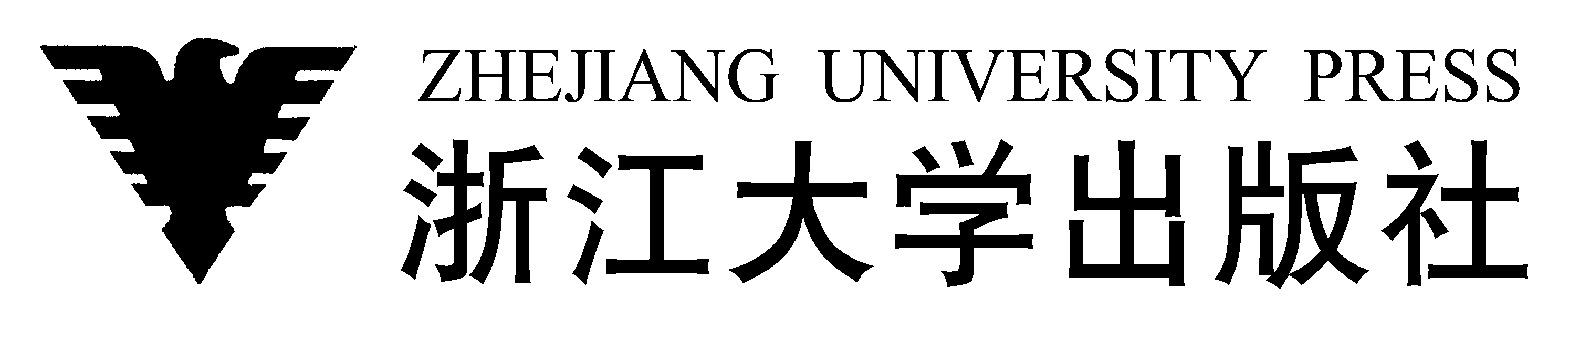 Zhejiang University Press